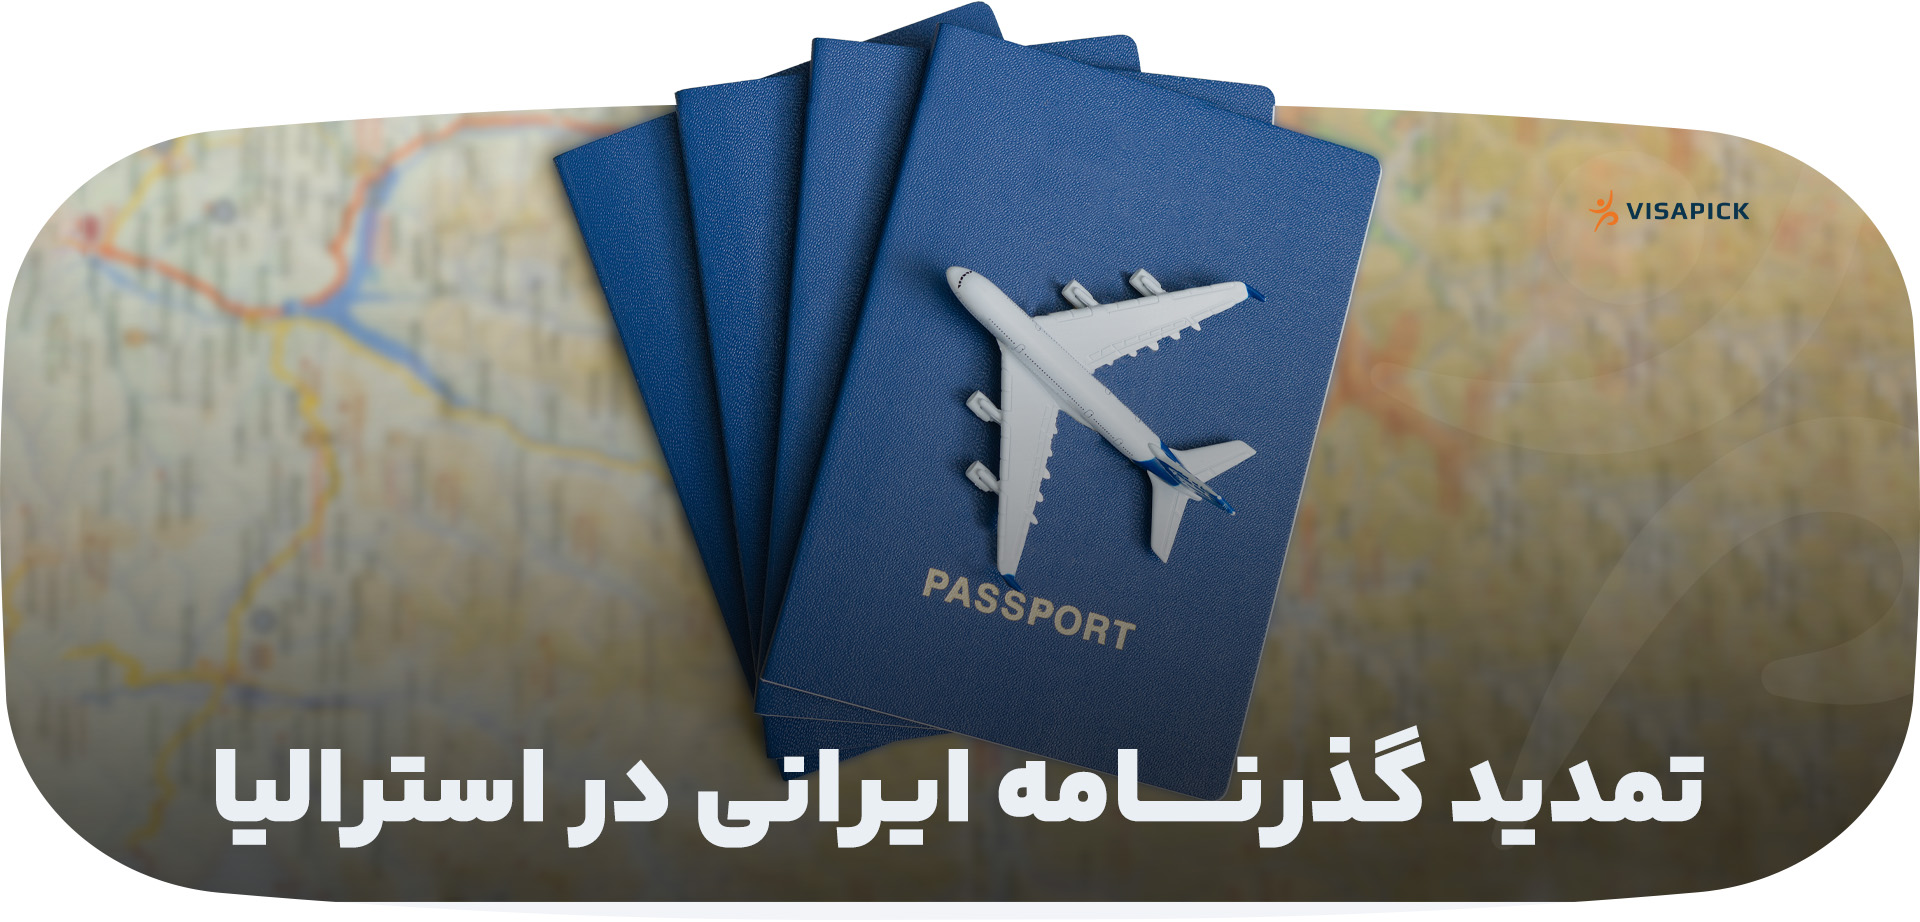 تمدید گذرنامه ایرانی در استرالیا